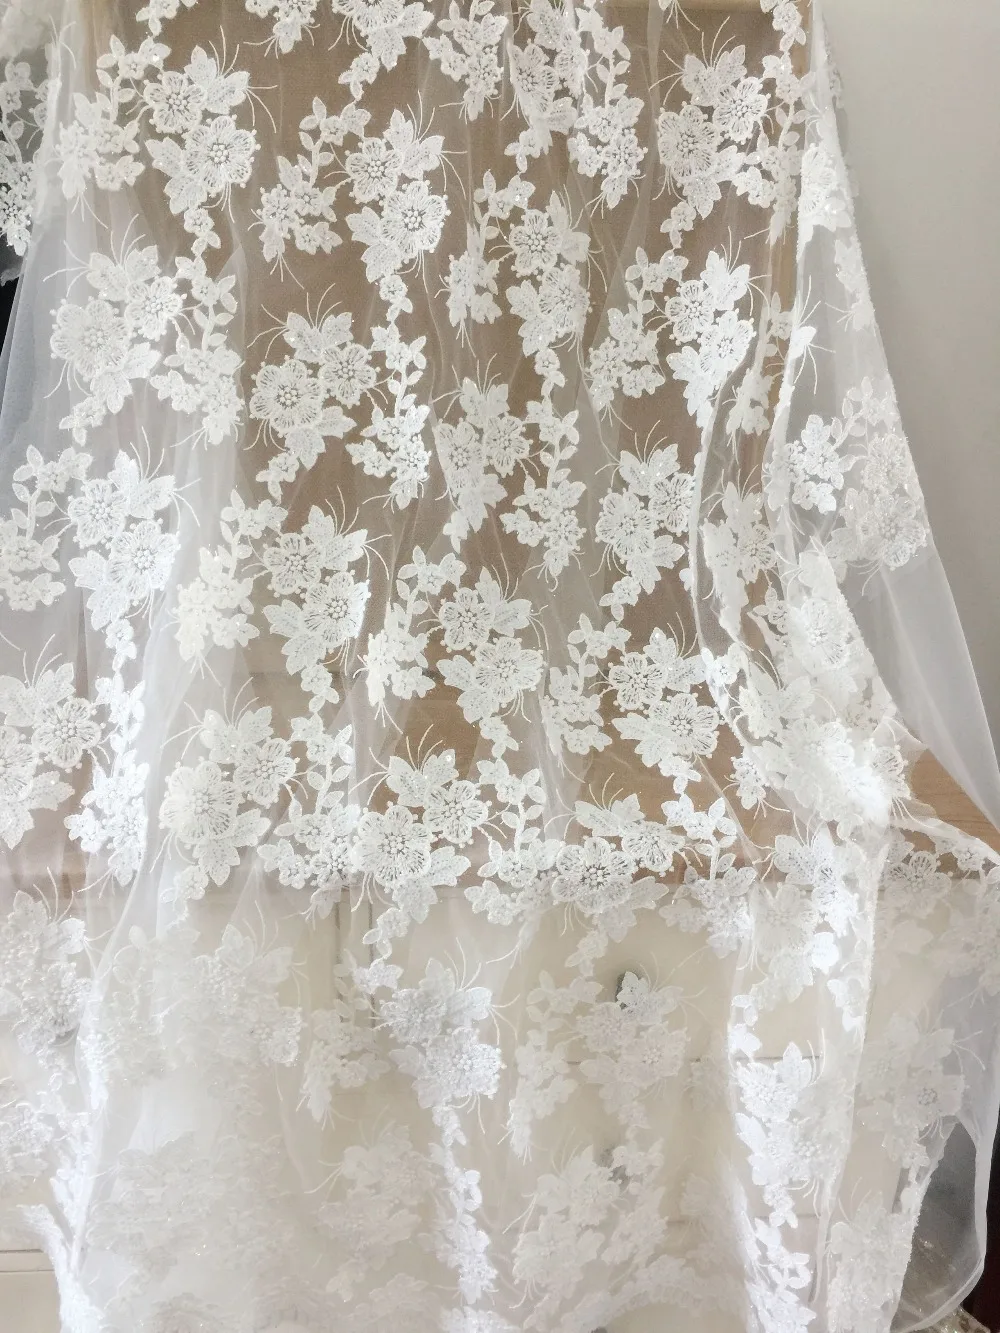 1 jarda pequena pérola frisado 3D flor de tecido do laço no off white, haute couture vestido de casamento vestido de noiva tecido pelo quintal 135 cm de largura